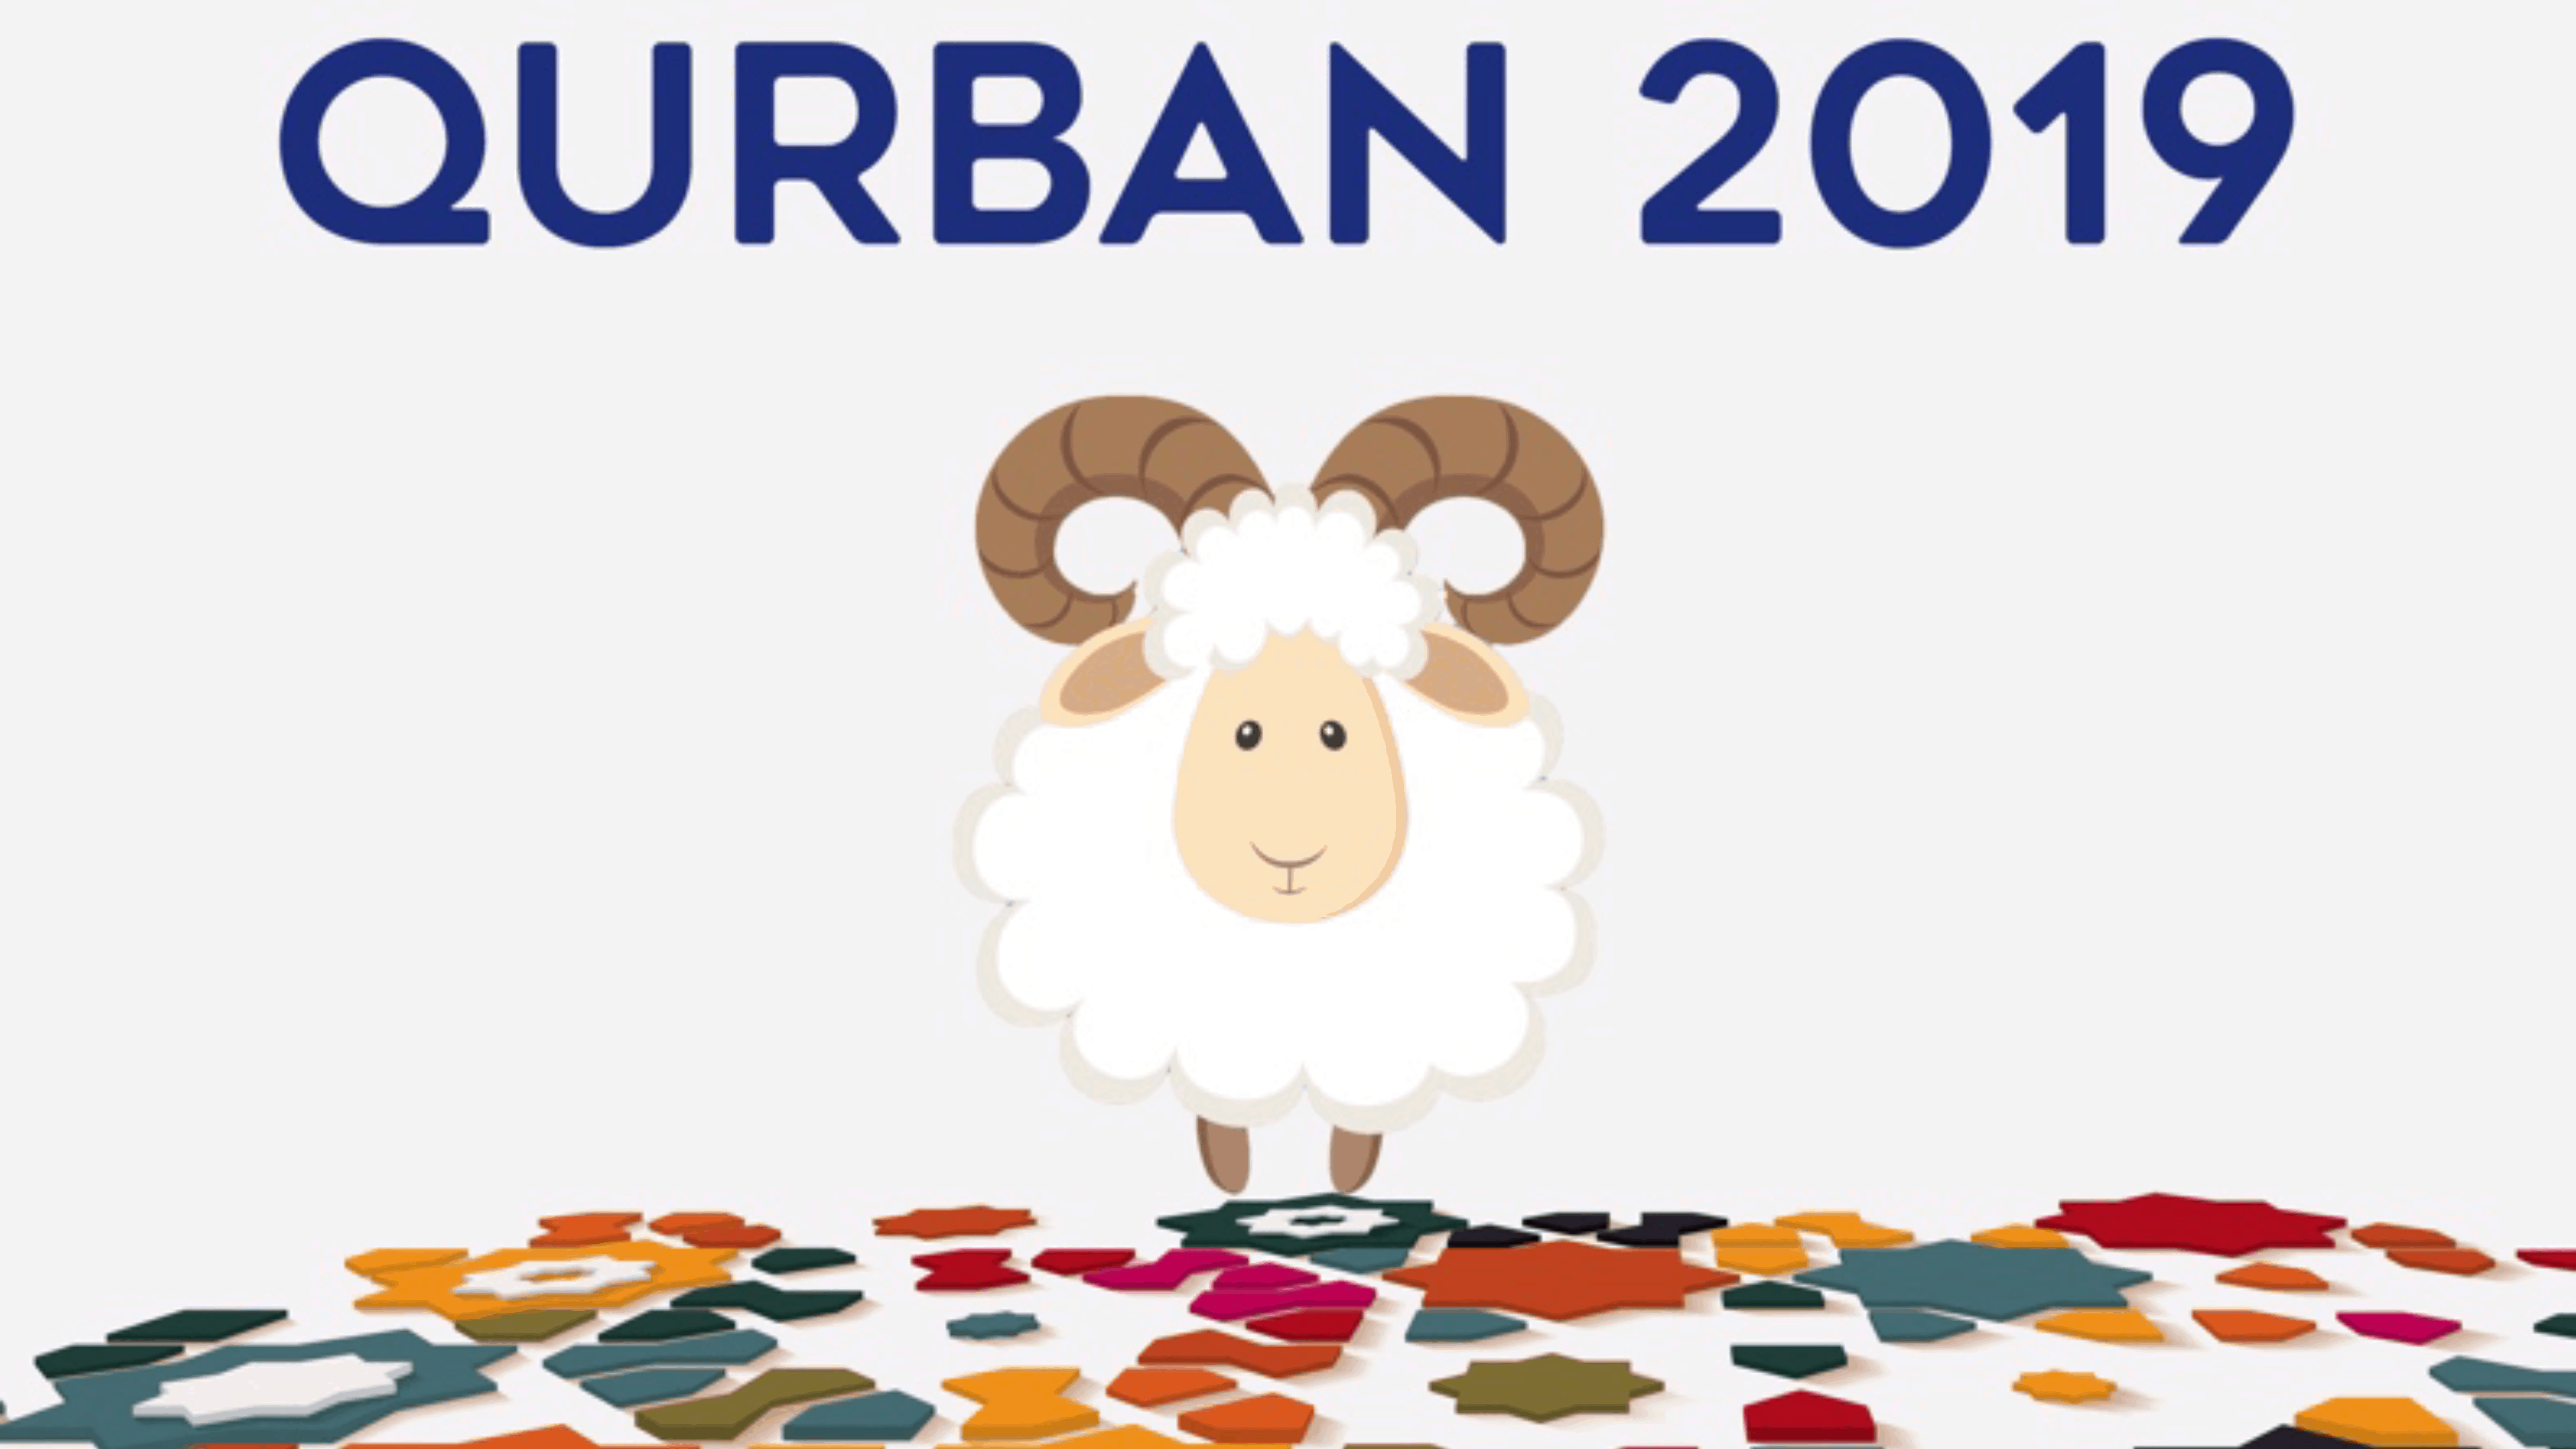 Qurban 2019